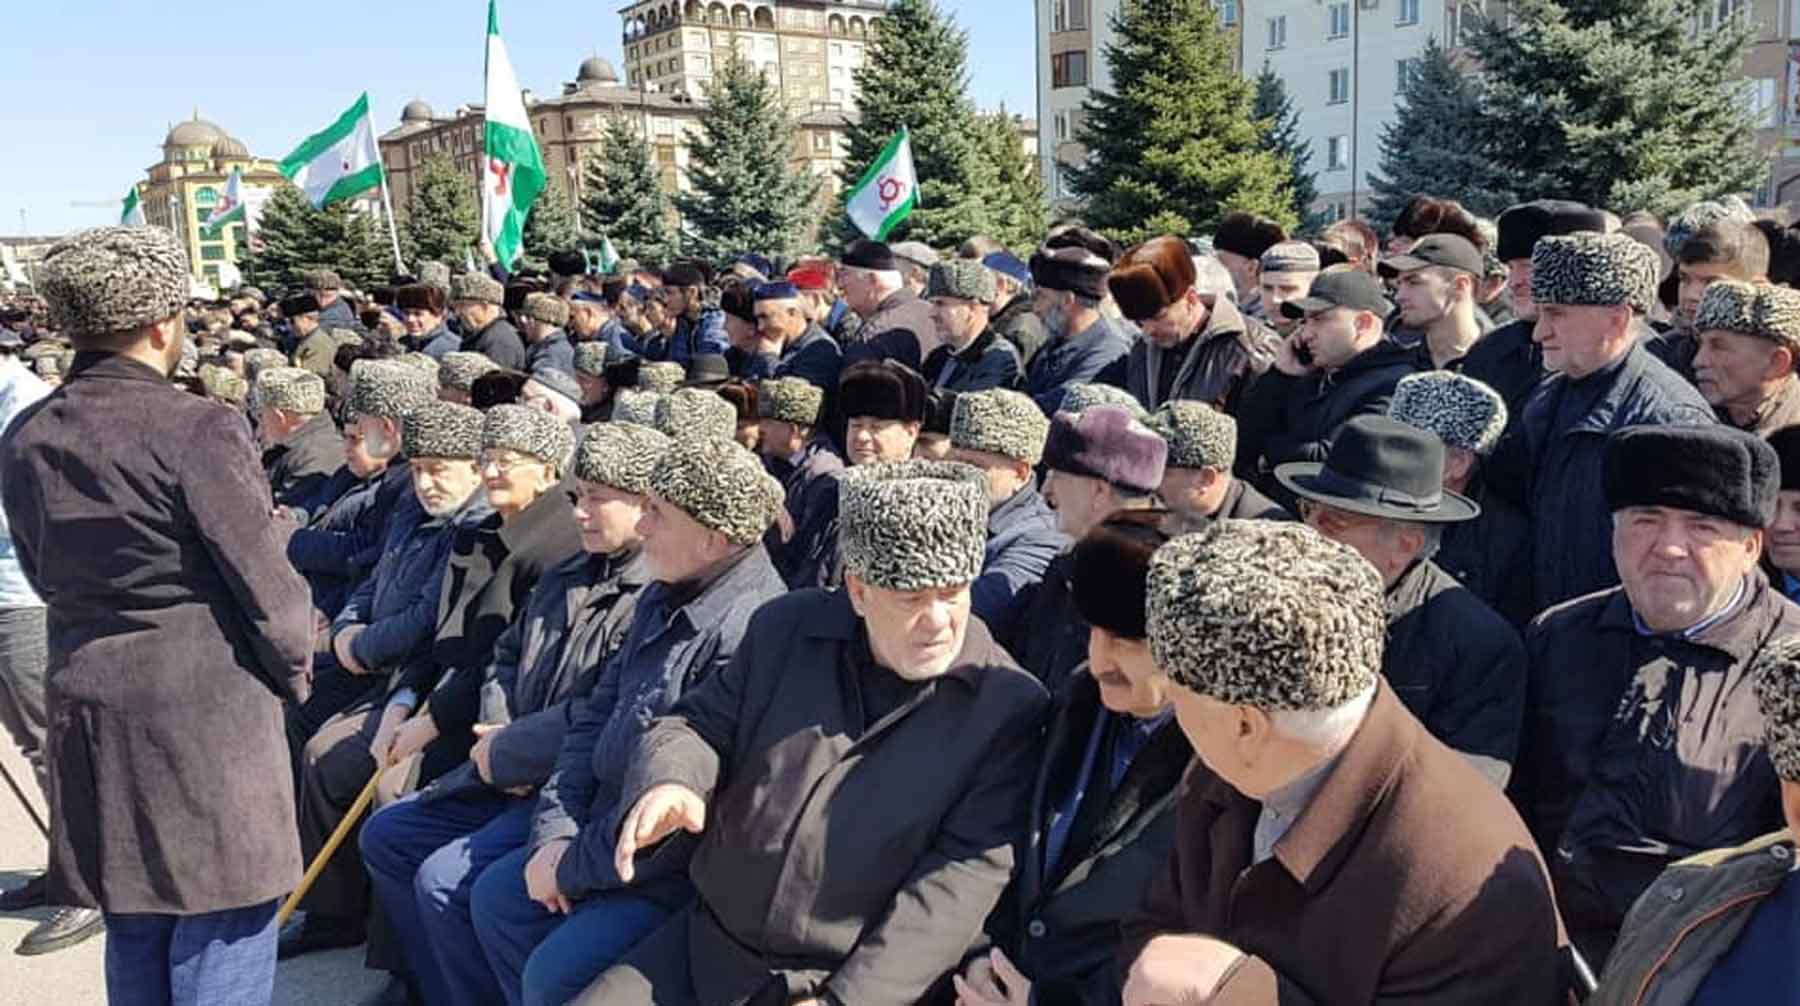 Участники потребовали отставки главы Ингушетии, пересмотра договора с Чечней о границе и активизации борьбы с коррупцией undefined